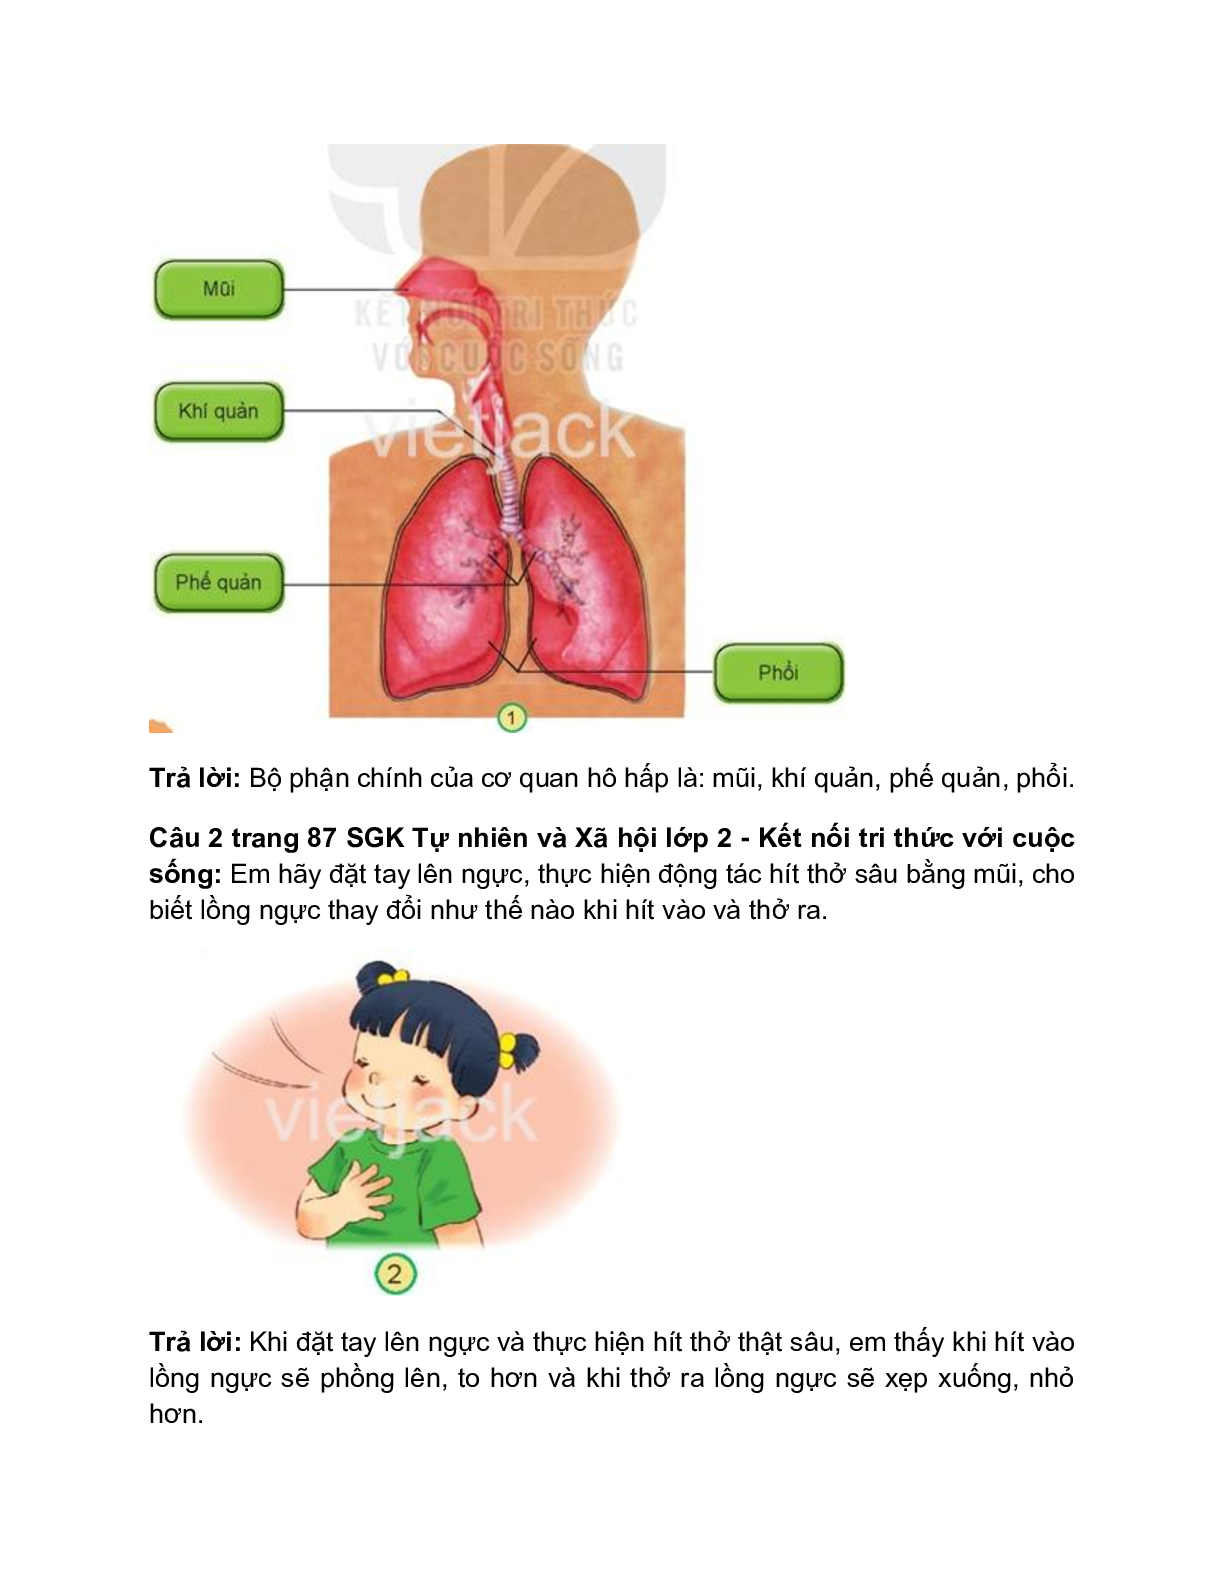 Giải SGK Tự nhiên và Xã hội lớp 2 trang 86, 87, 88, 89 Bài 23: Tìm hiểu cơ quan hô hấp – Kết nối tri thức (trang 2)